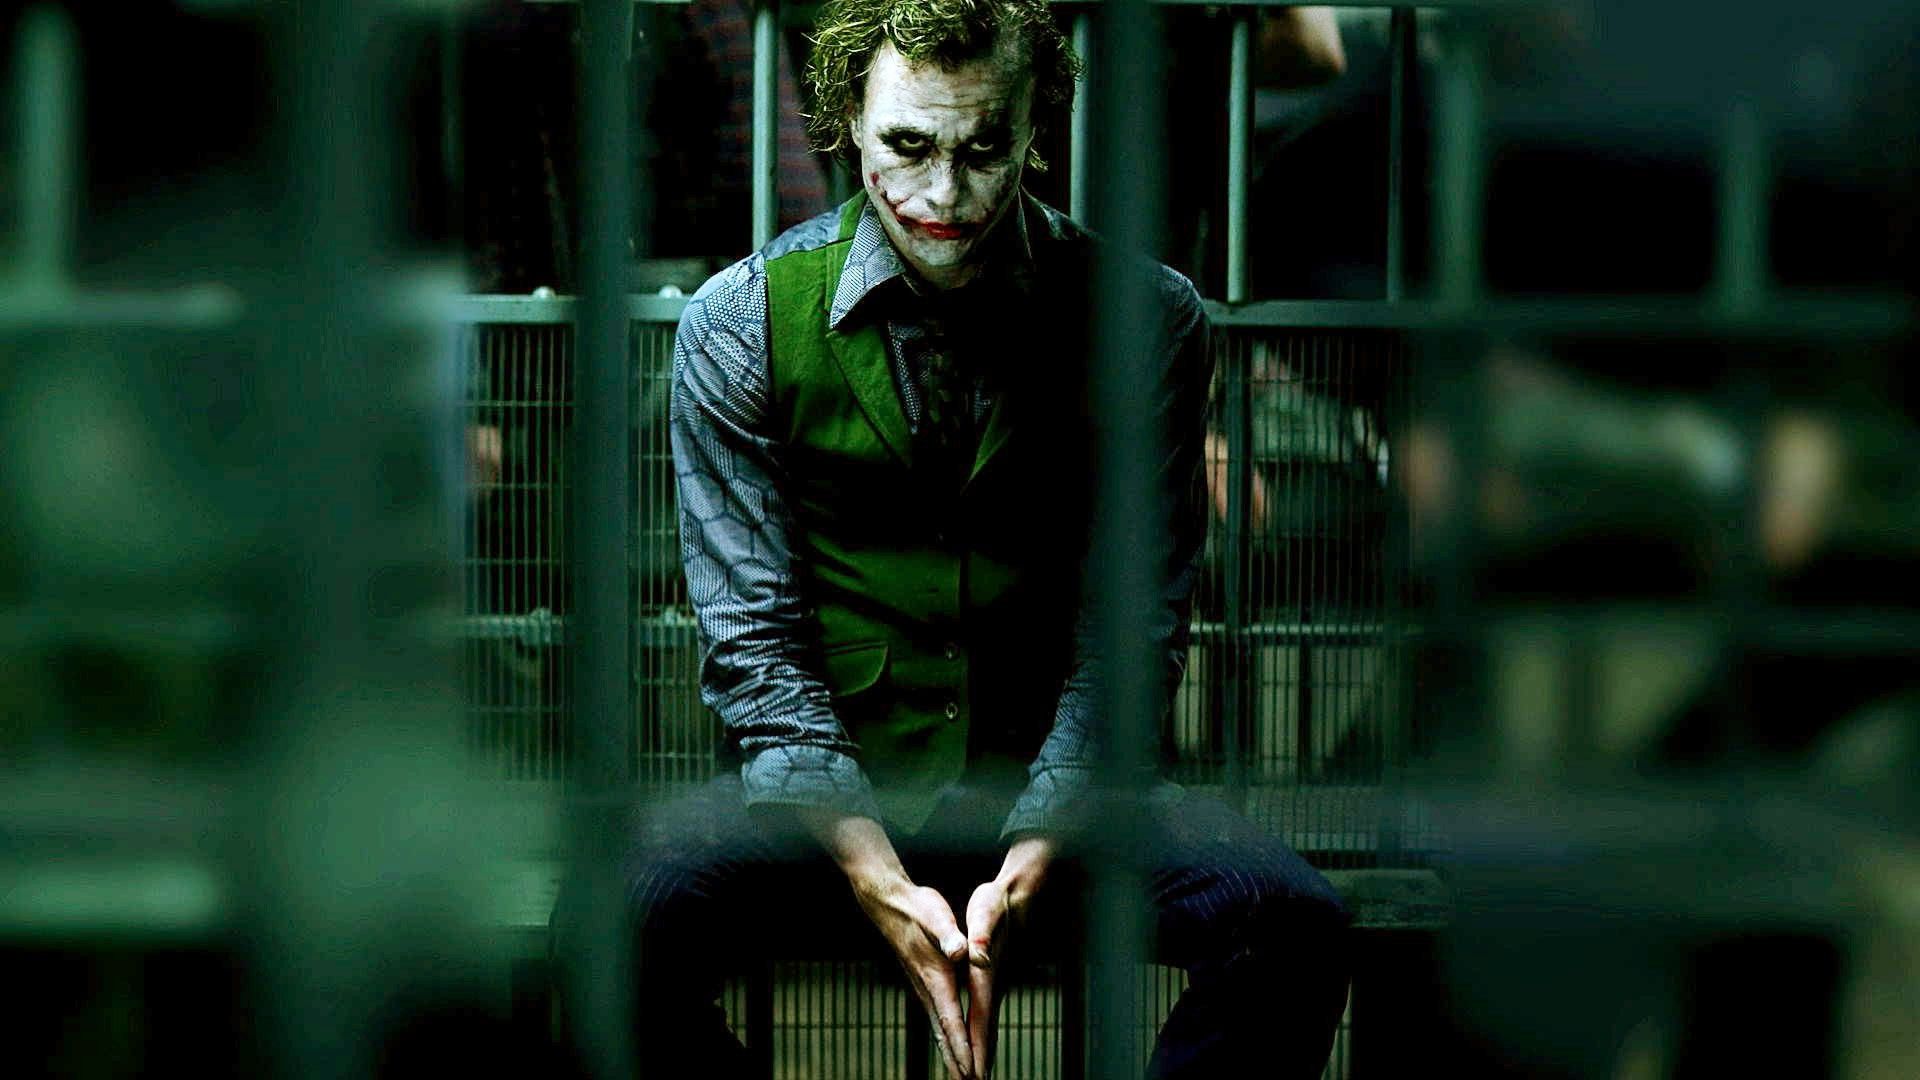 Joker Mổ xẻ cái Ác bằng đẳng cấp của Joaquin Phoenix  Điện ảnh  Vietnam  VietnamPlus